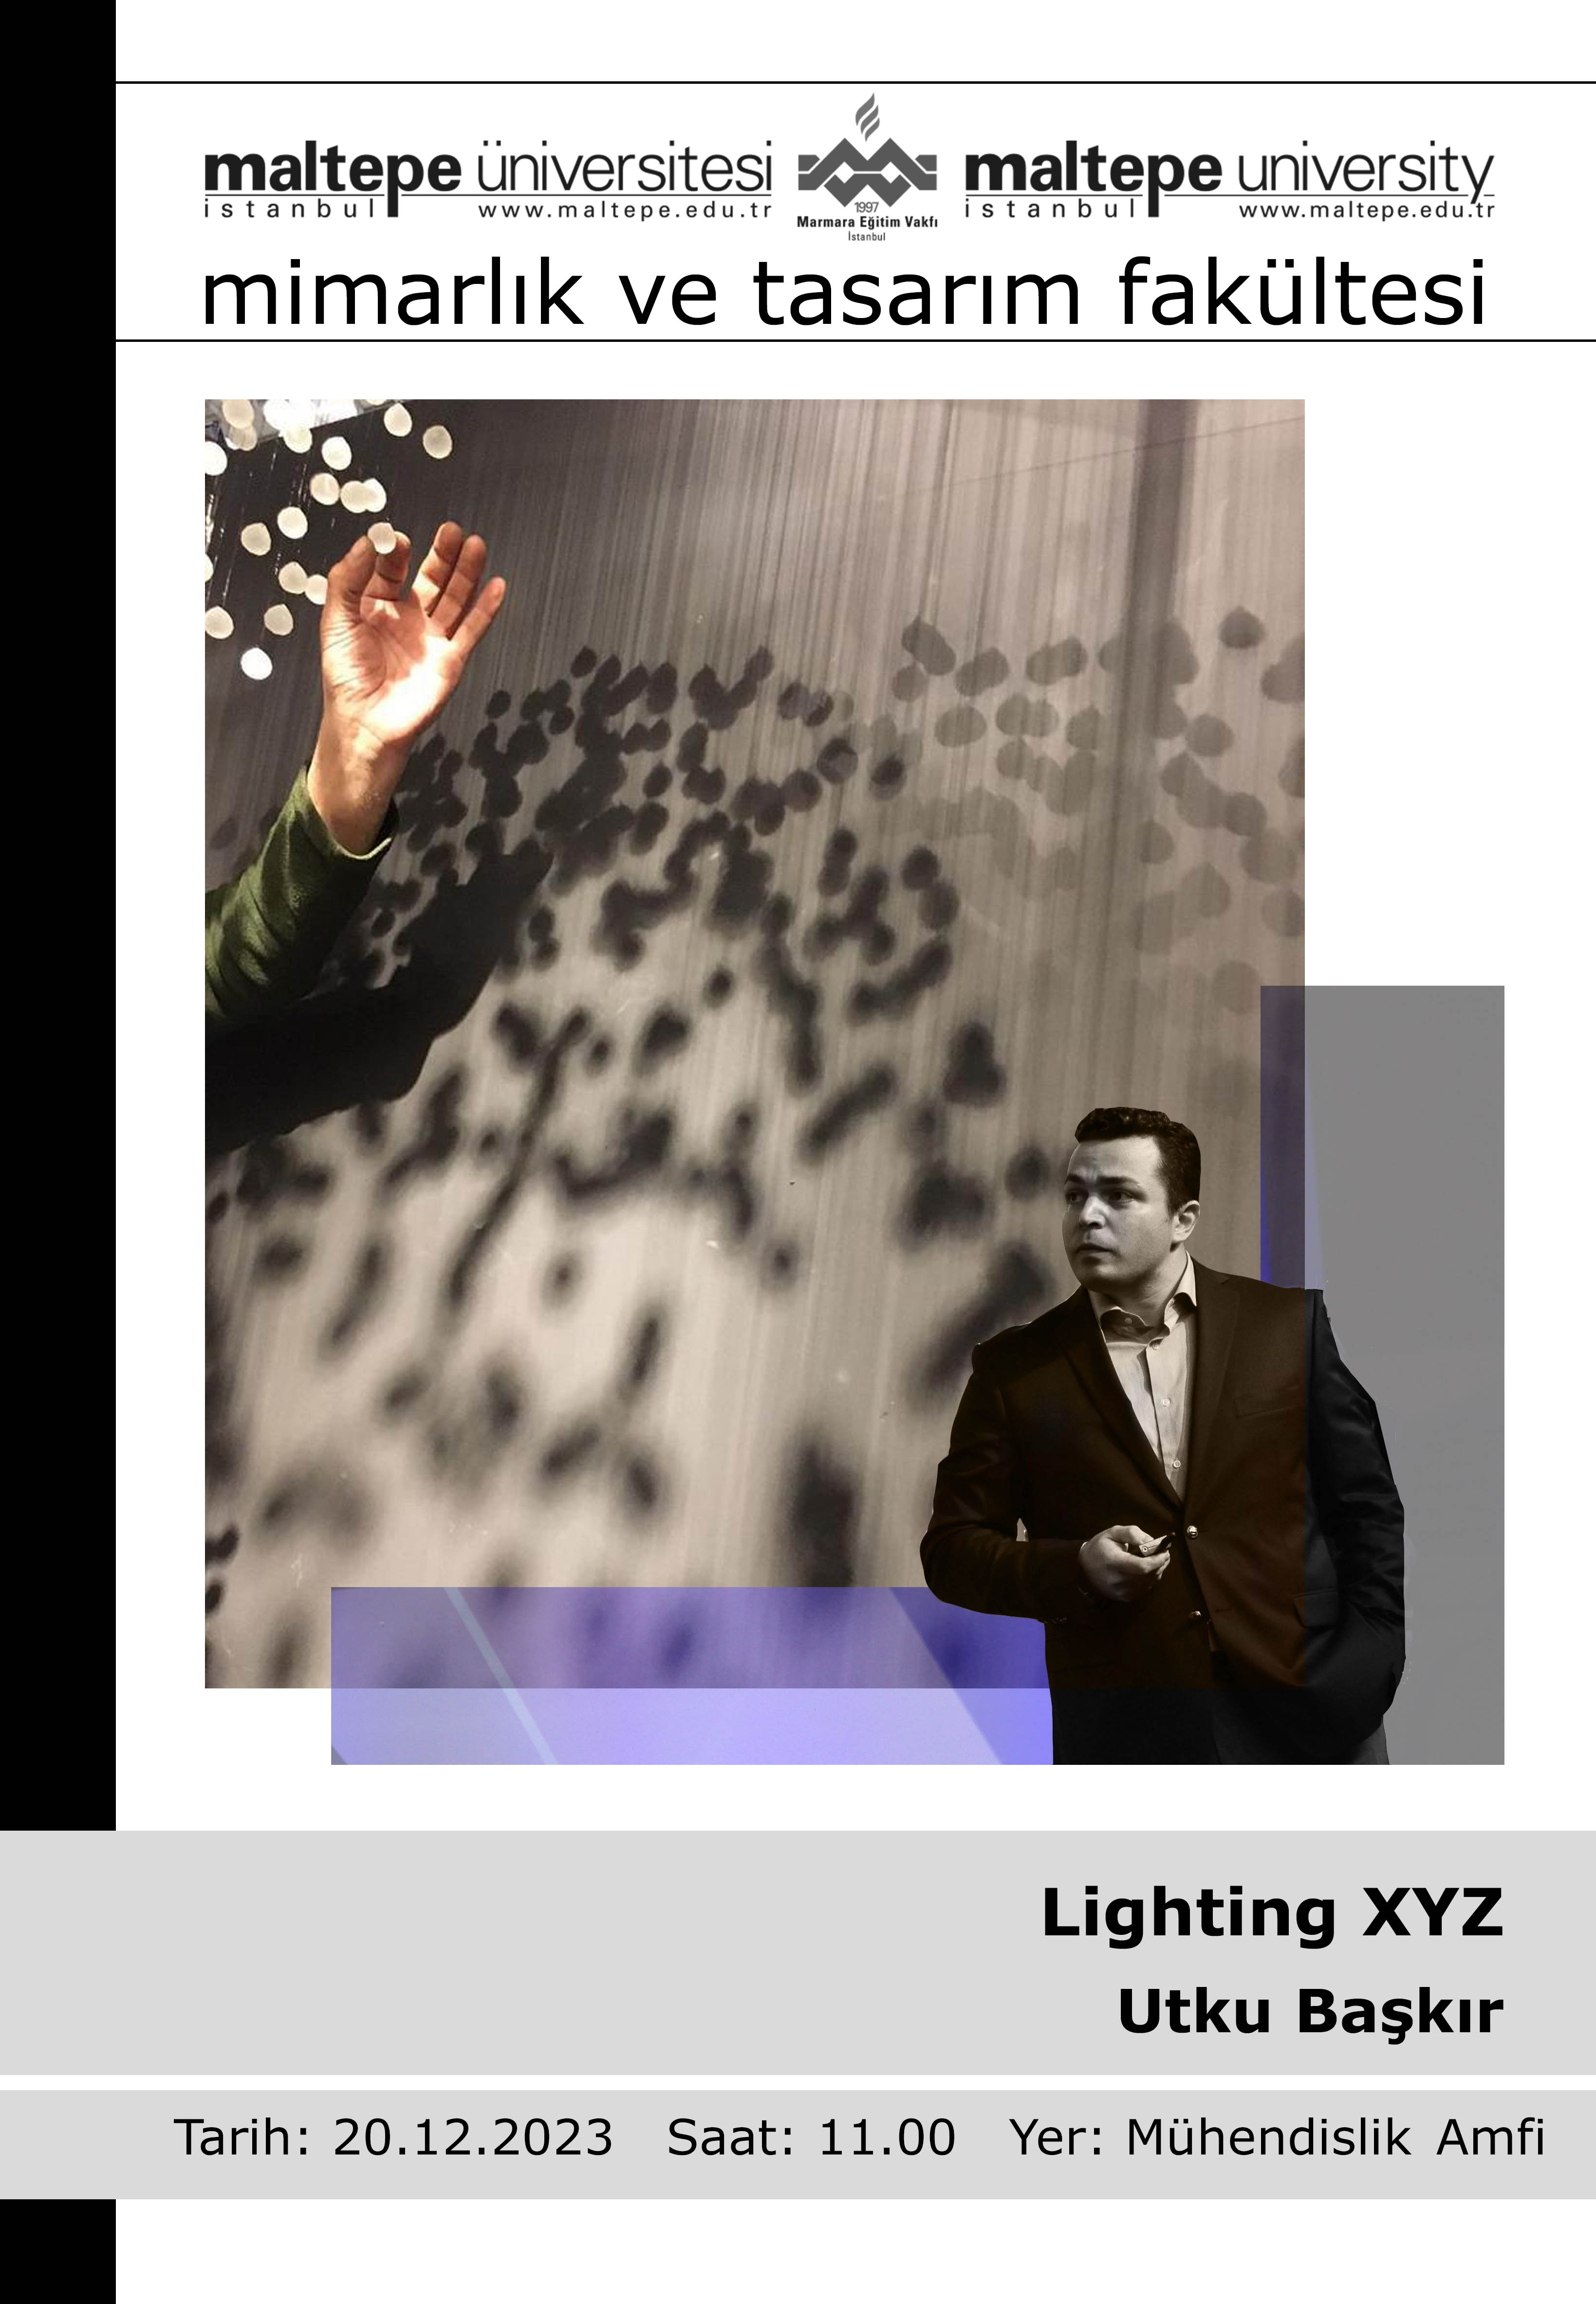 "Lighting XYZ"